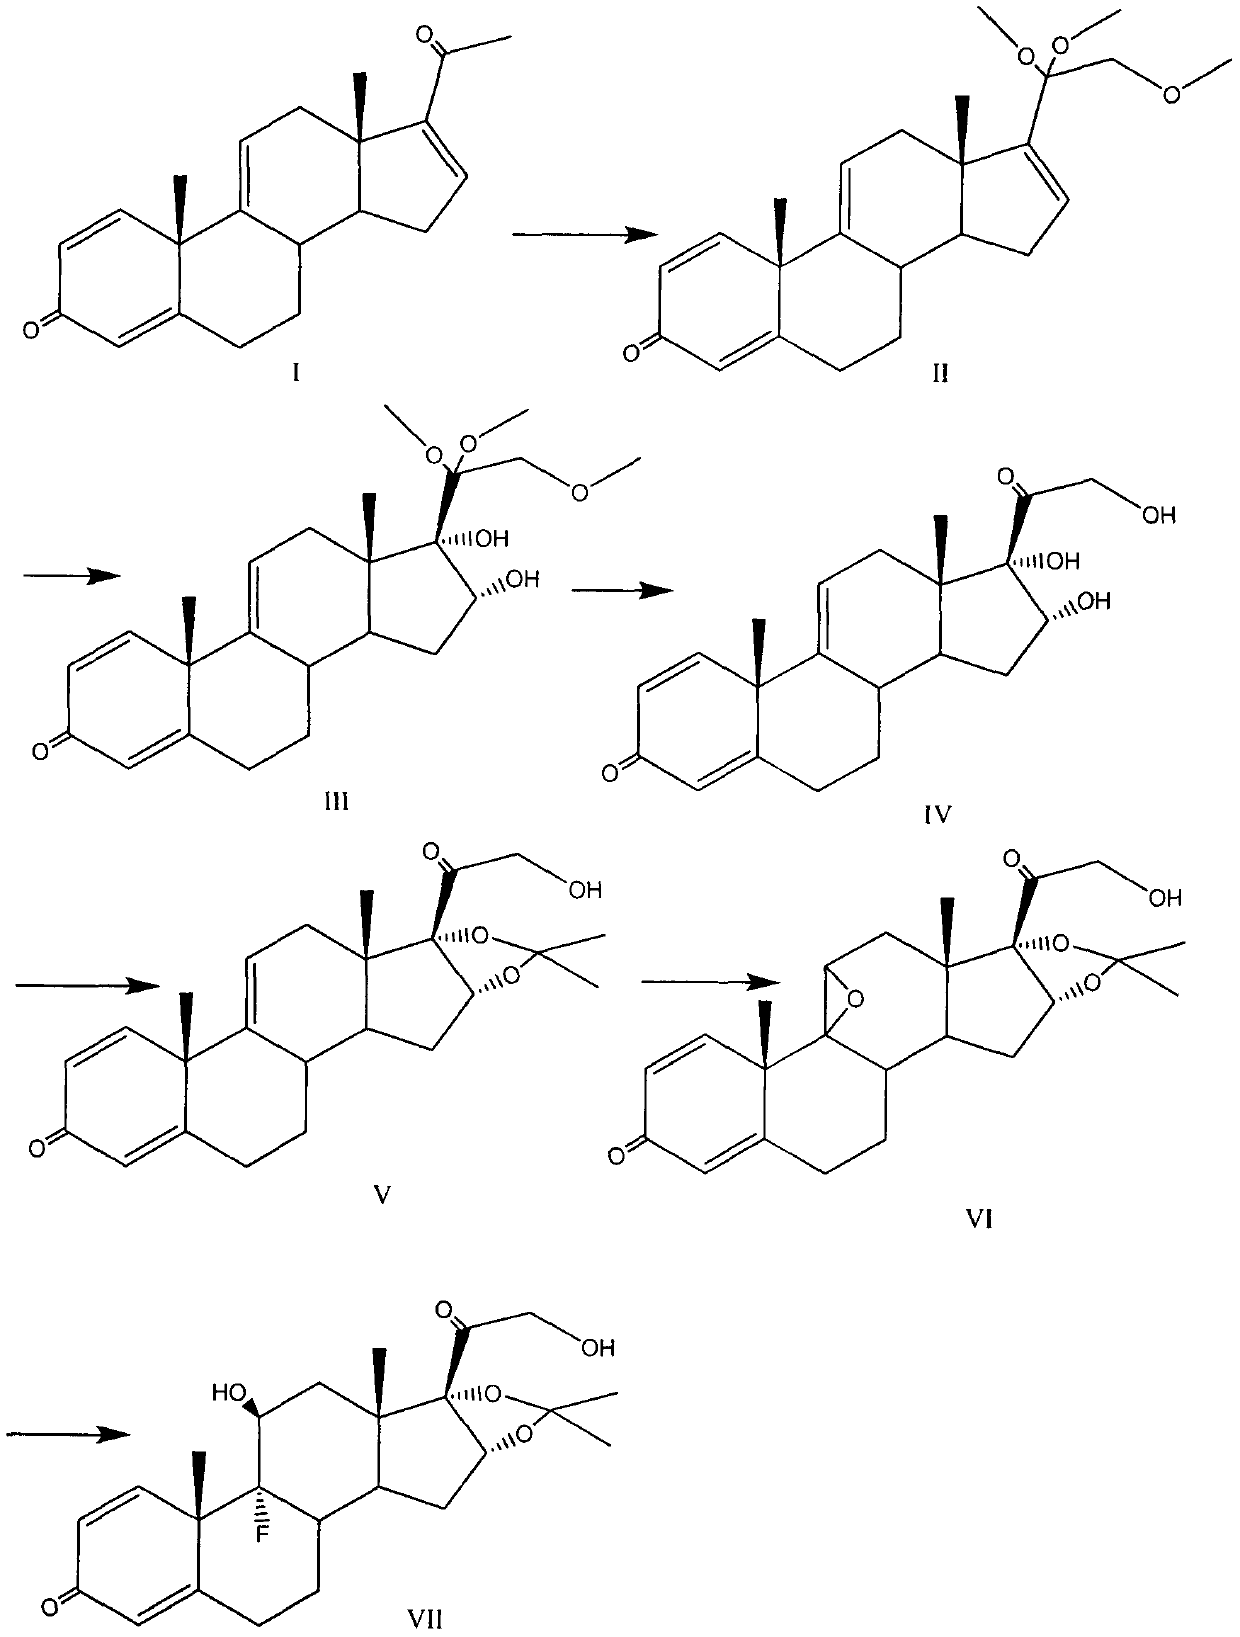 Triamcinolone acetonide acetate preparation method